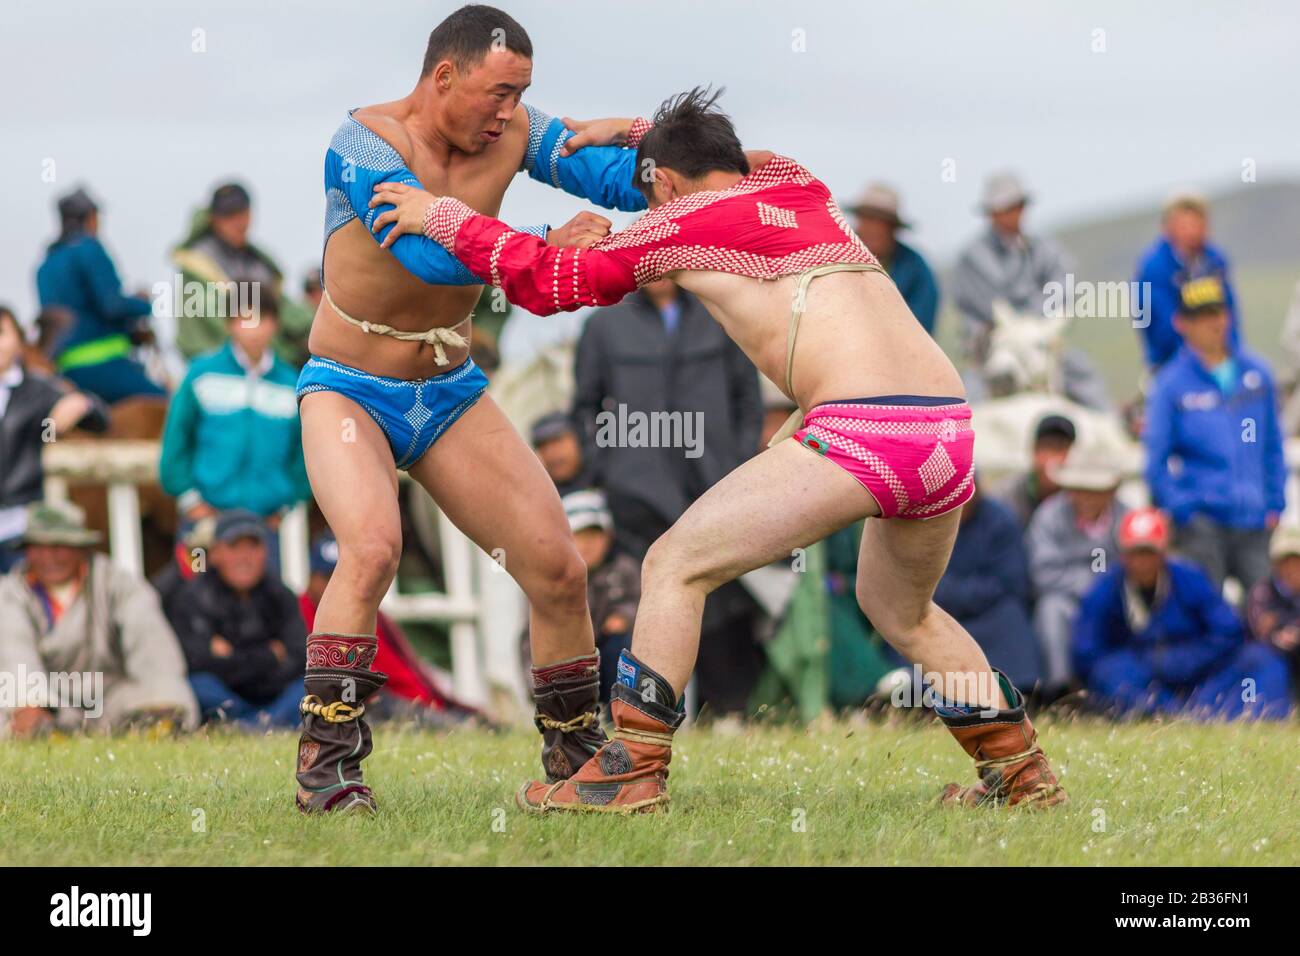 Mongolie, province de Khovsgol, Tsagauannur, festival de Naadam, tournoi de lutte, lutteurs luttant devant les spectateurs Banque D'Images